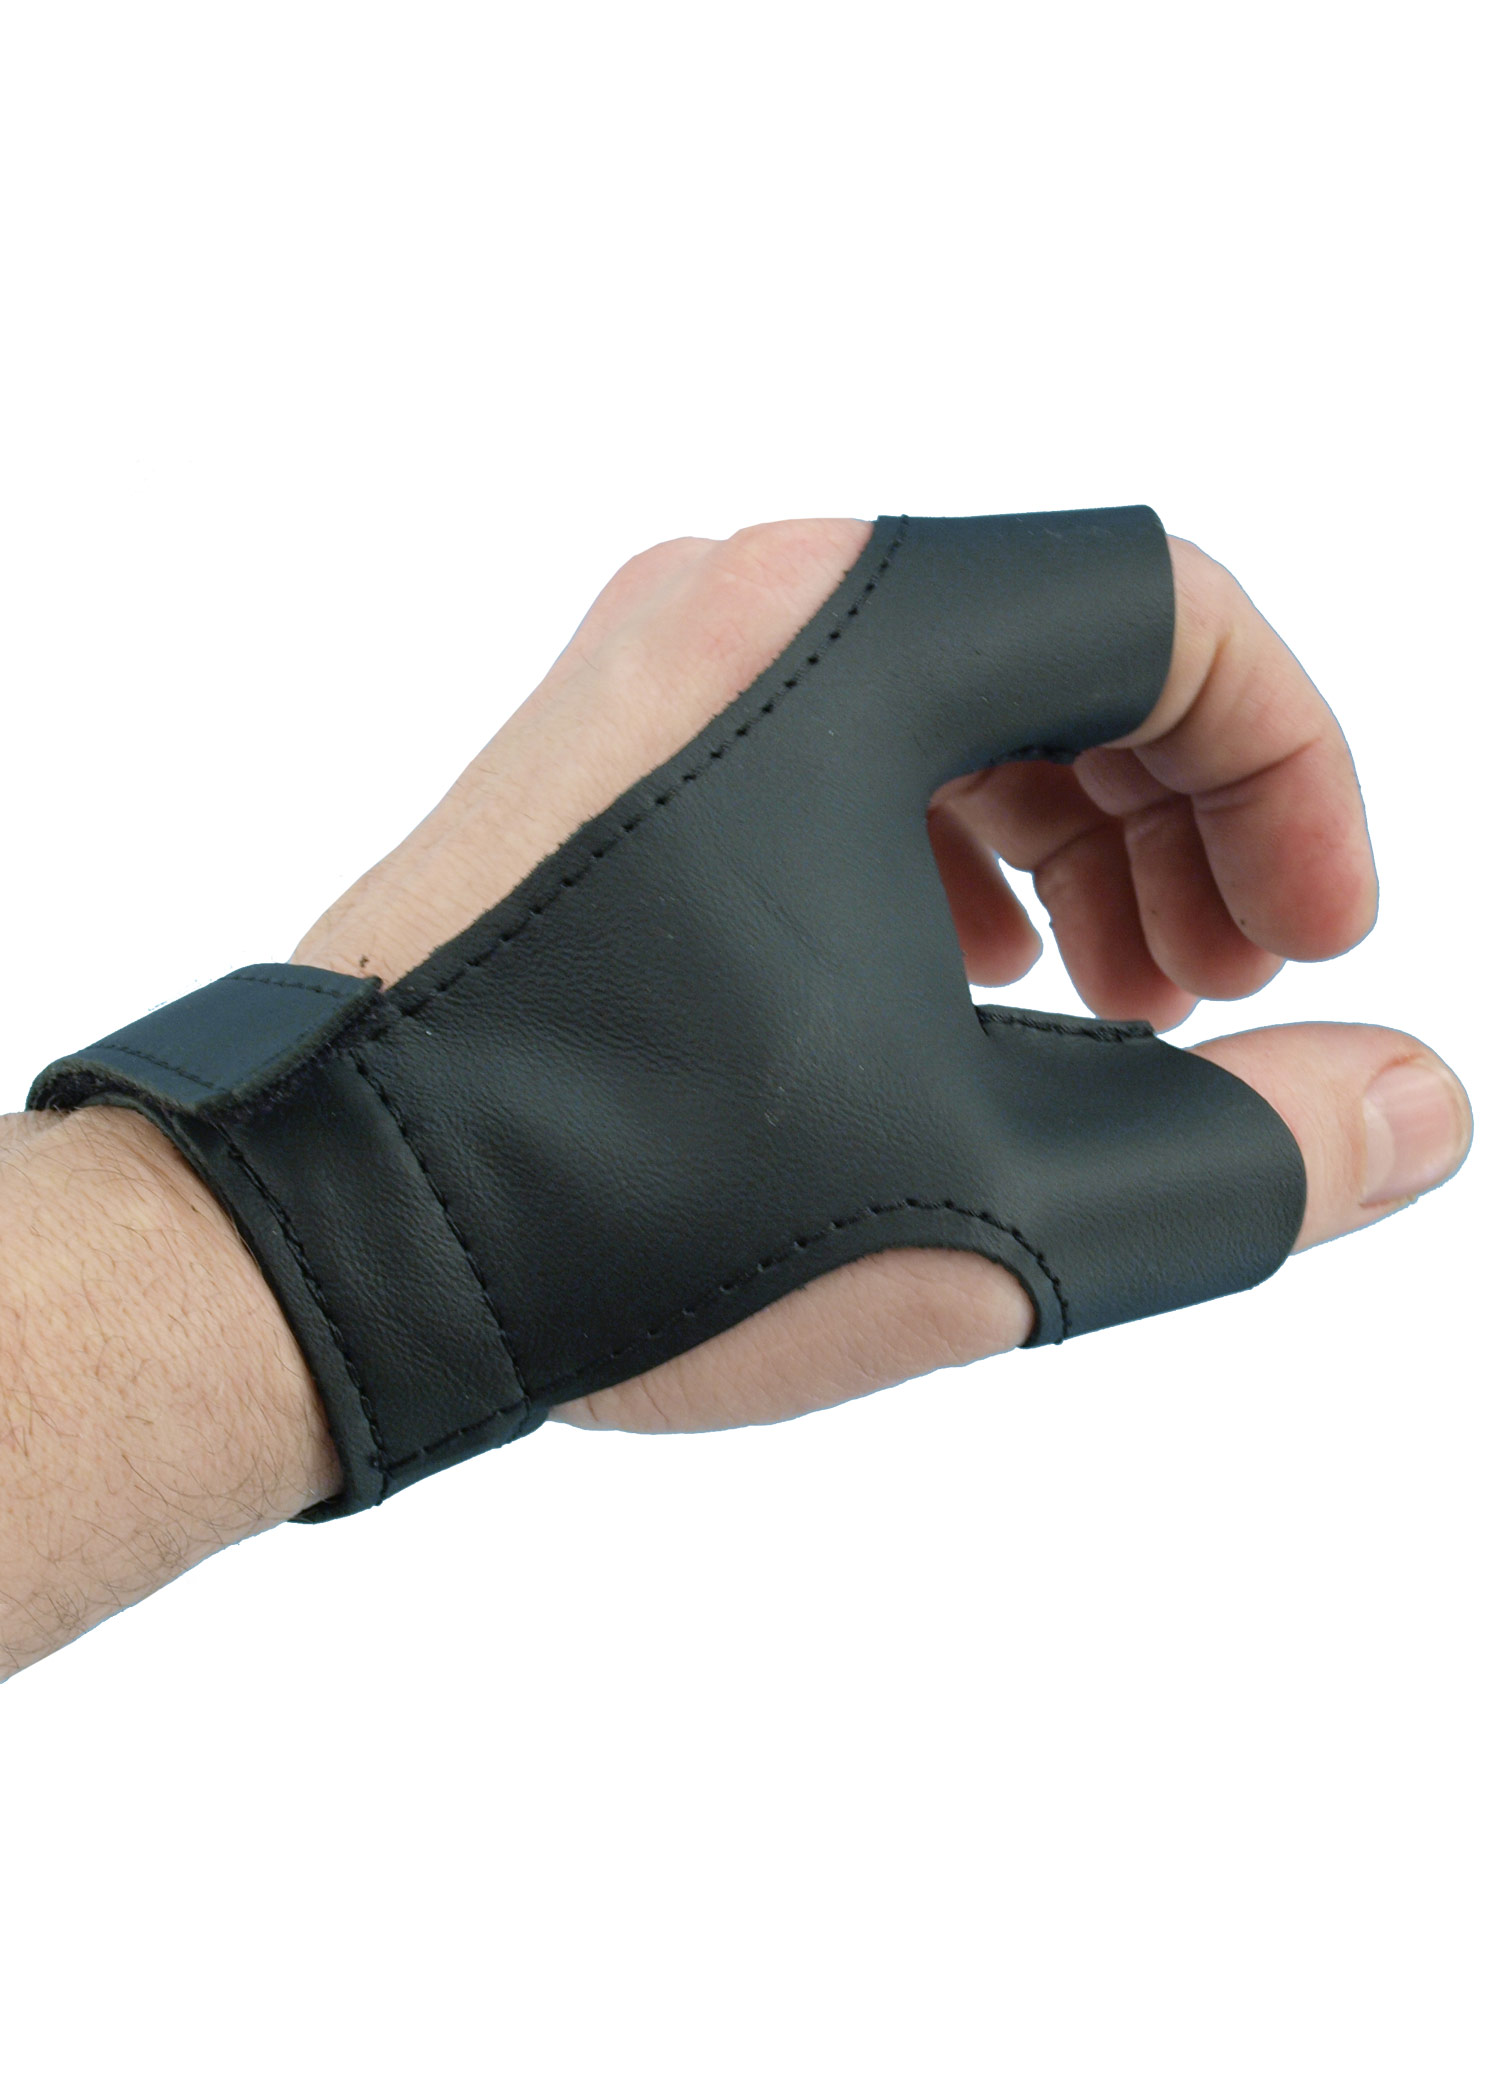 Bogenhandschuh aus Leder für Rechtshänder, schwarz, Größe L